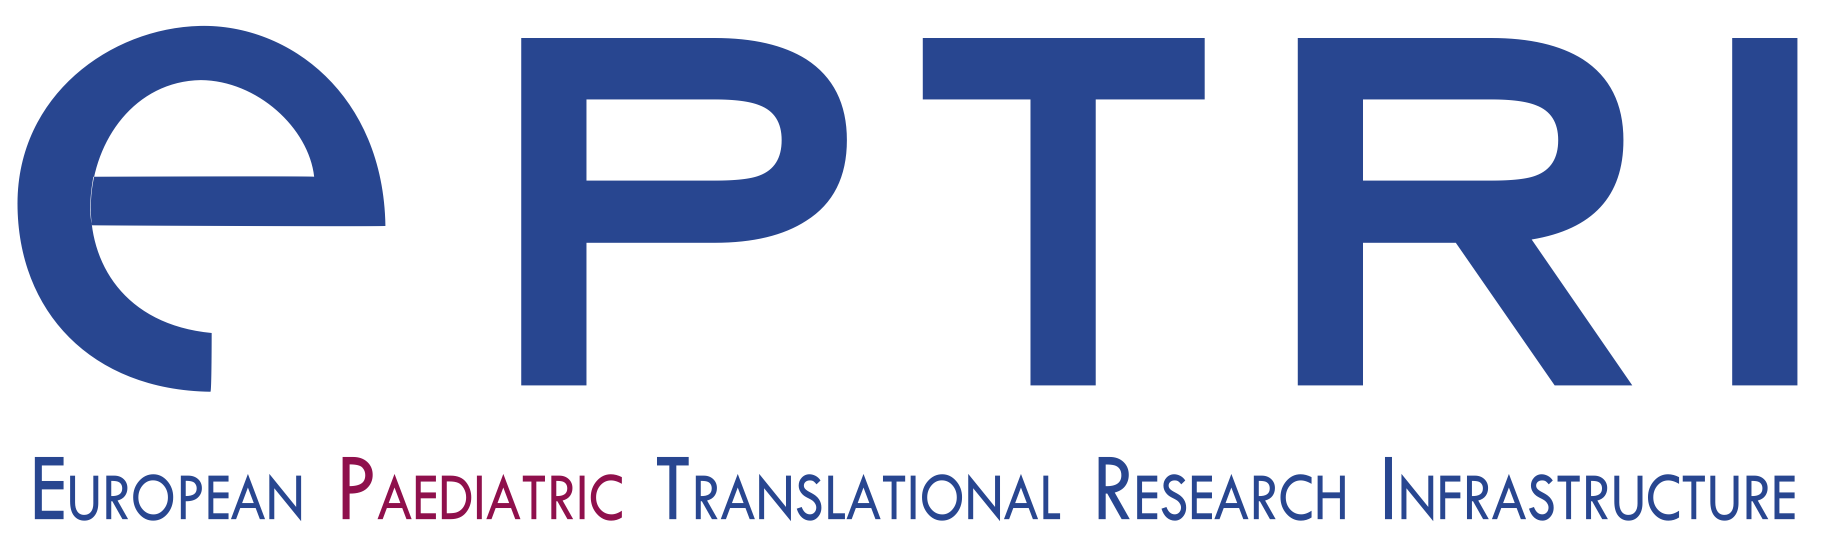 EPTRI logo